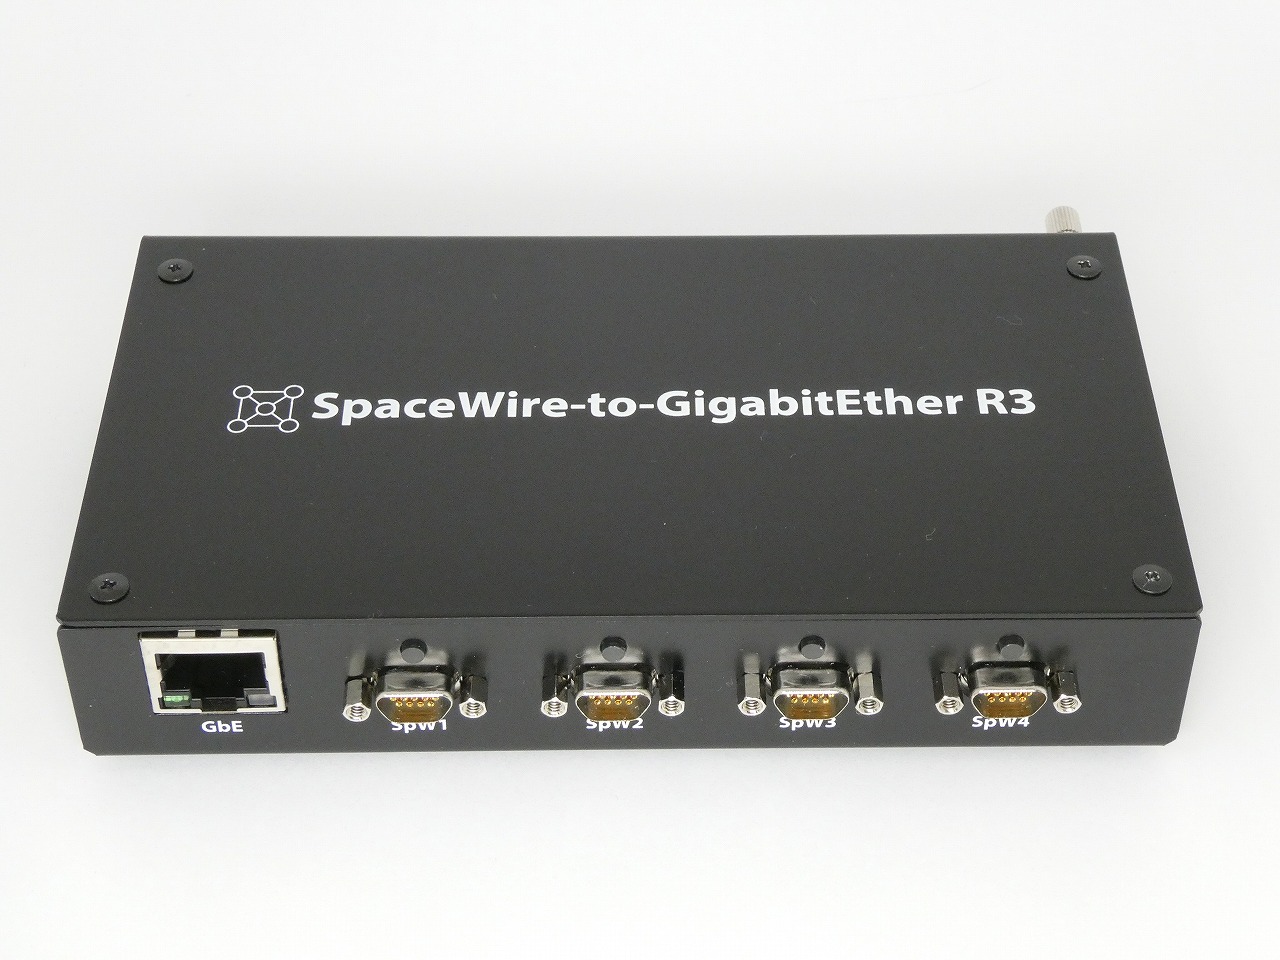 SpaceWire-to-GigabitEtherR3